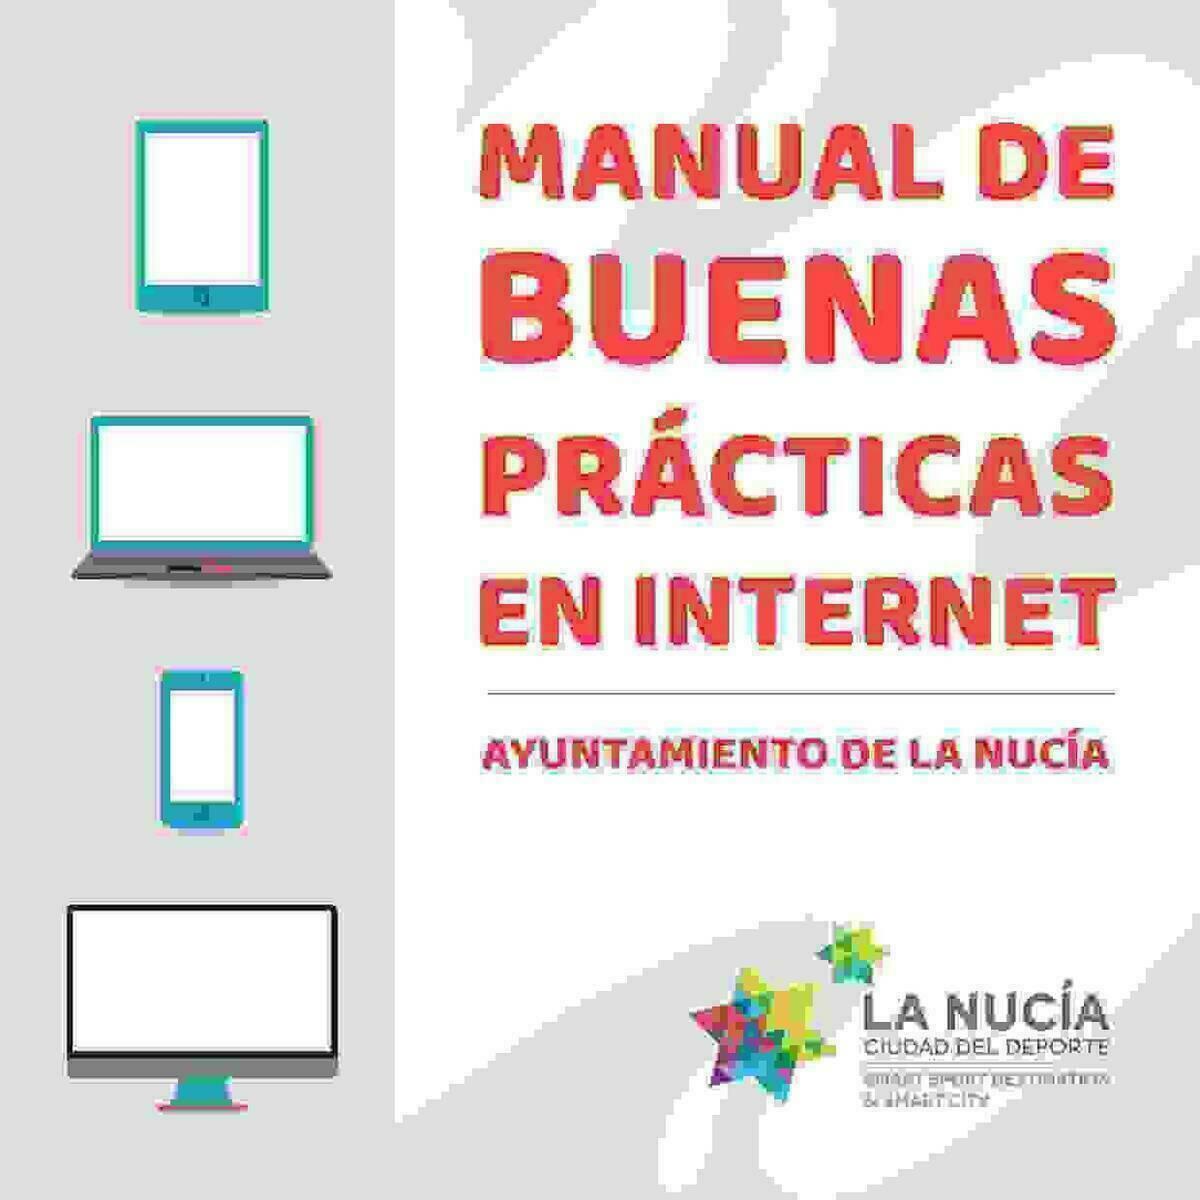 La Nucía edita un “Manual de Buenas Prácticas en Internet”.